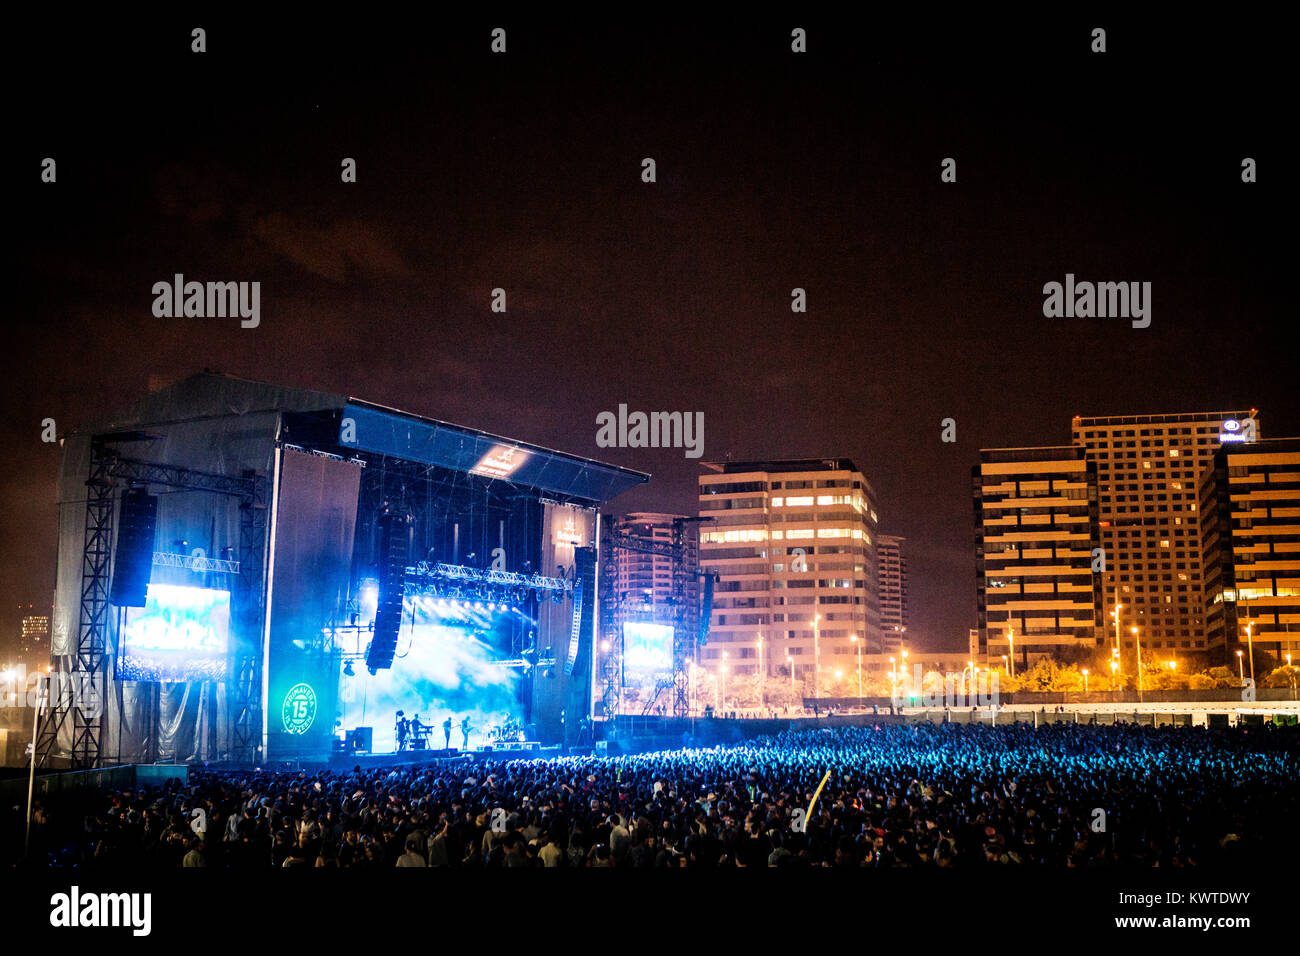 Die spanische Musik Festival Primavera Sound gehört zu den beliebtesten Indie Rock Musik Festivals der Welt. Spanien, 30/05 2015. Stockfoto